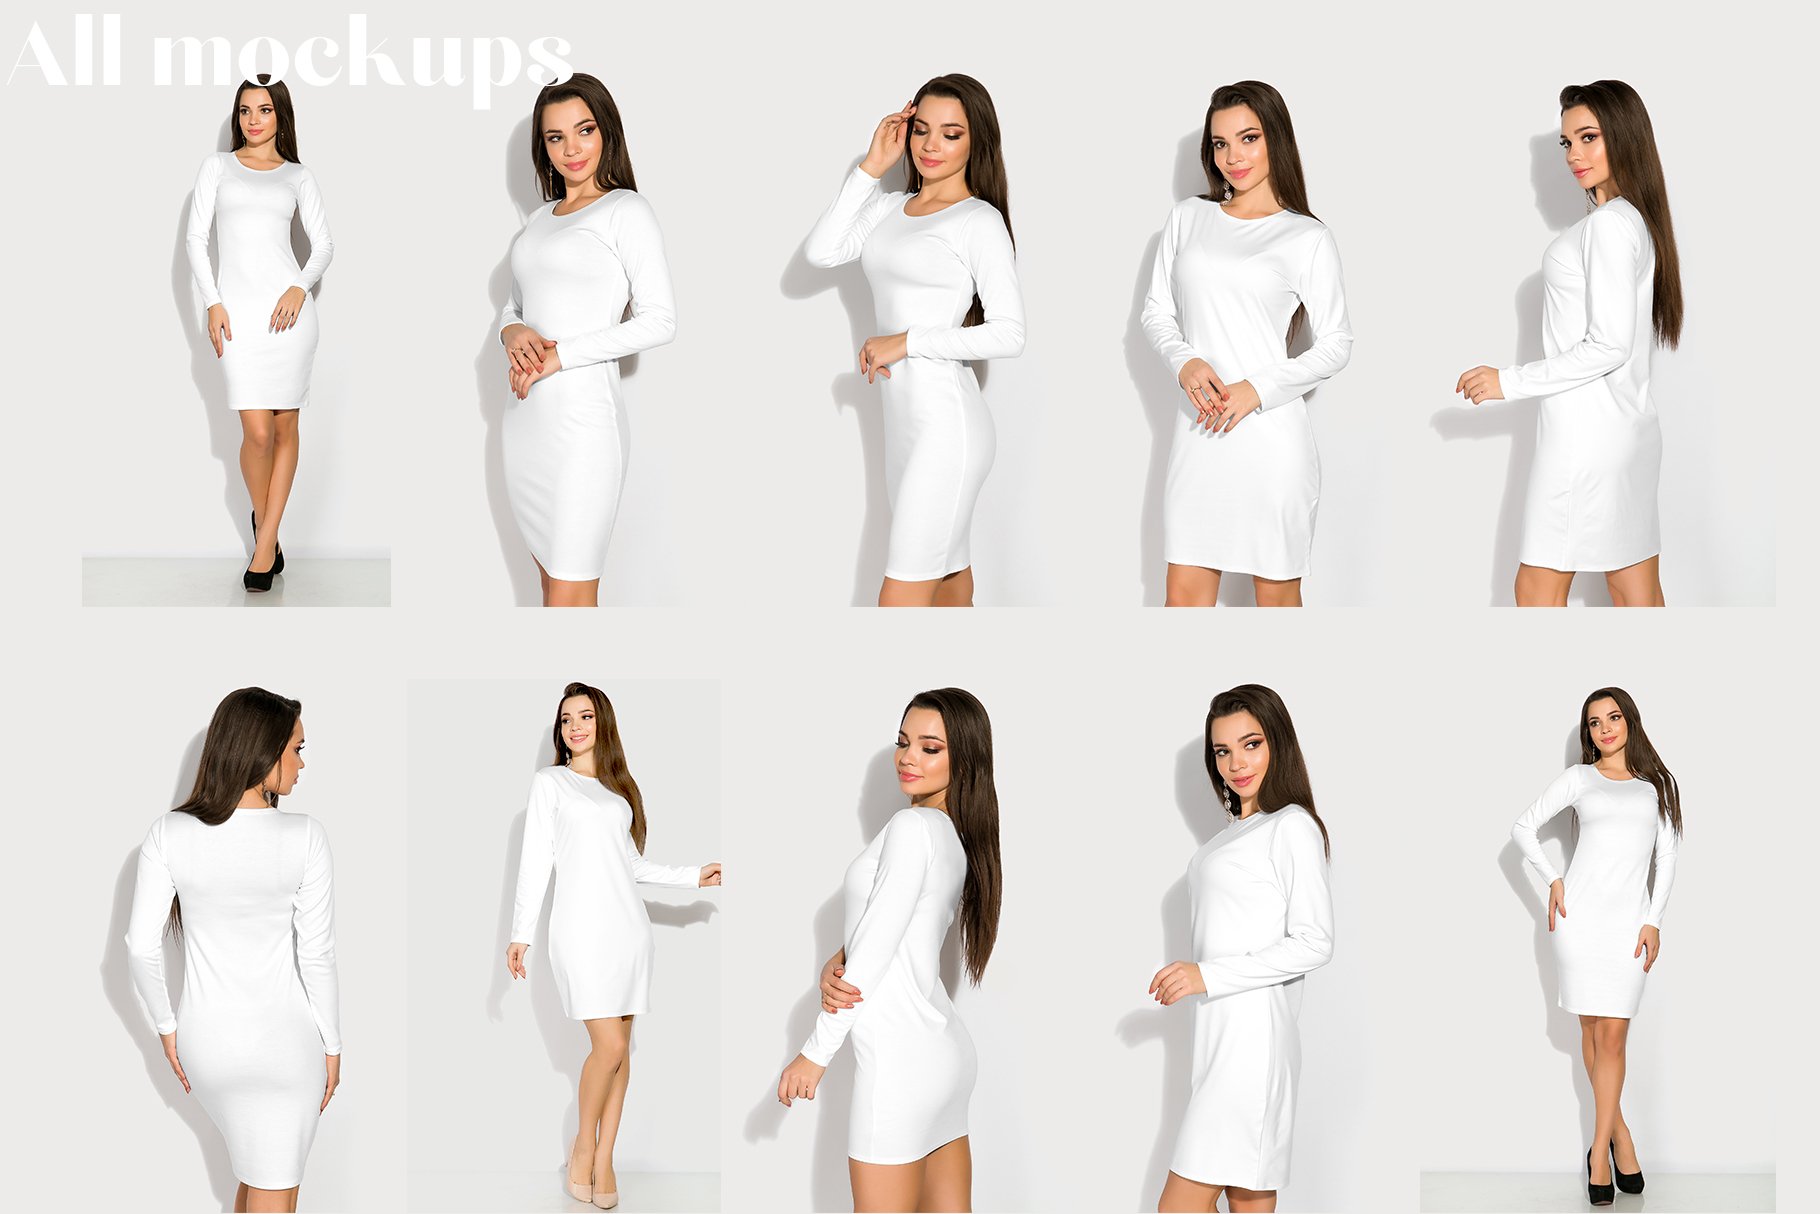 female elegant apparel mockup set for pattern design presentation 141